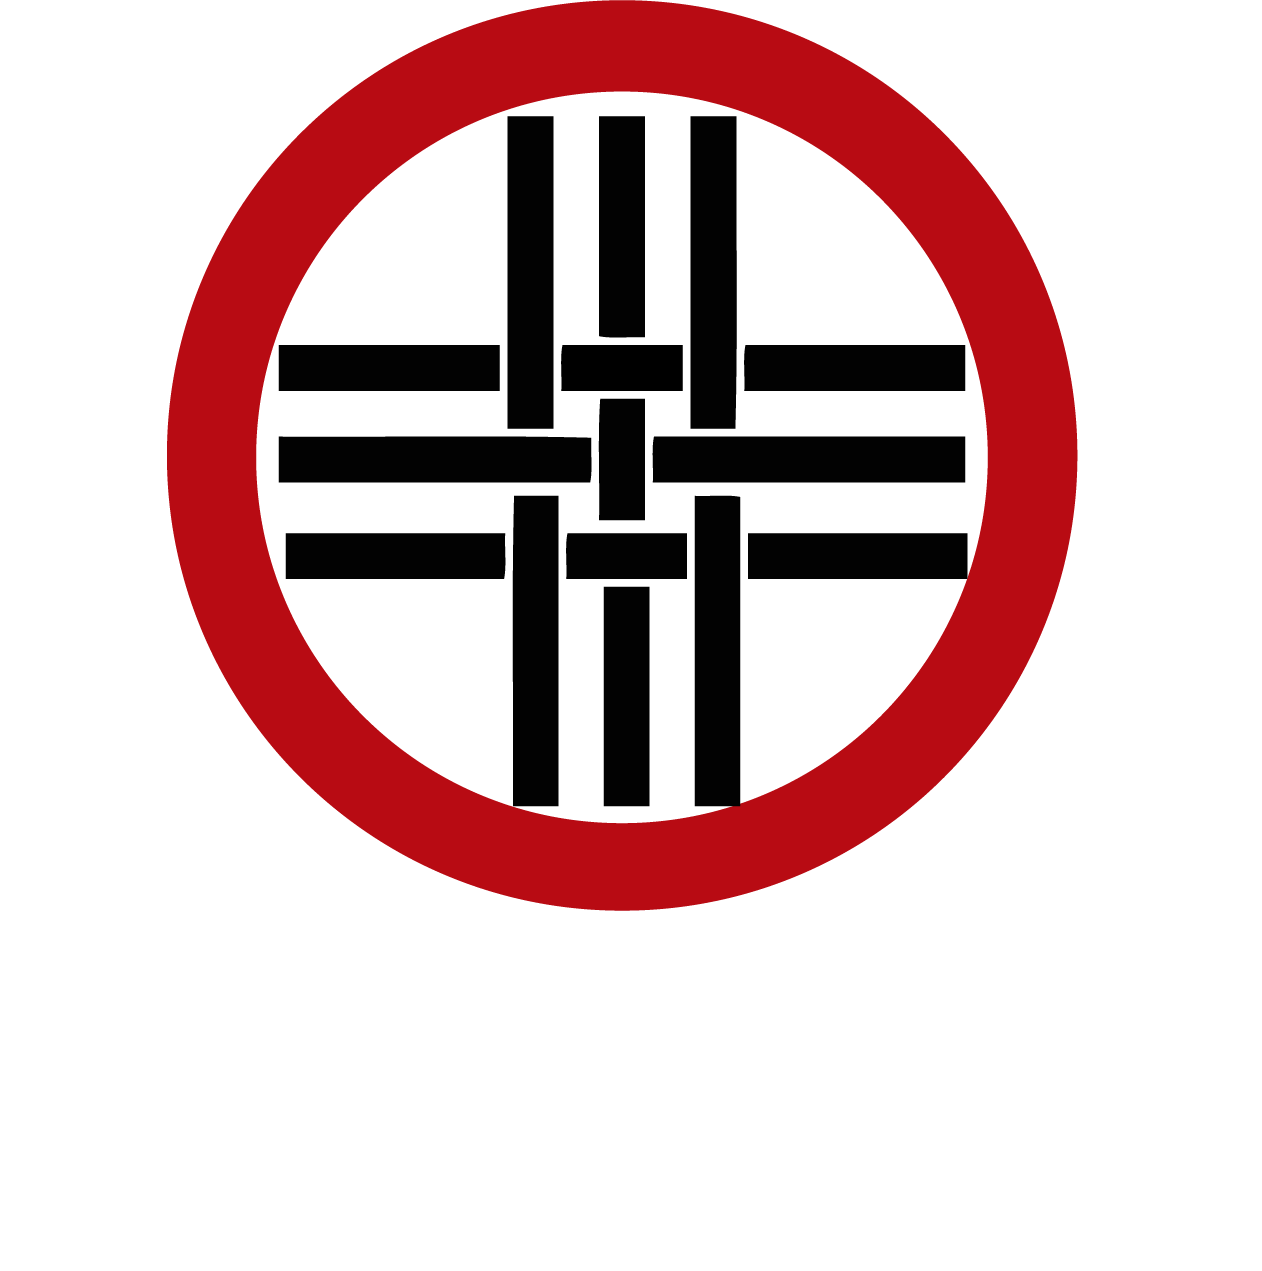 RadioCensura